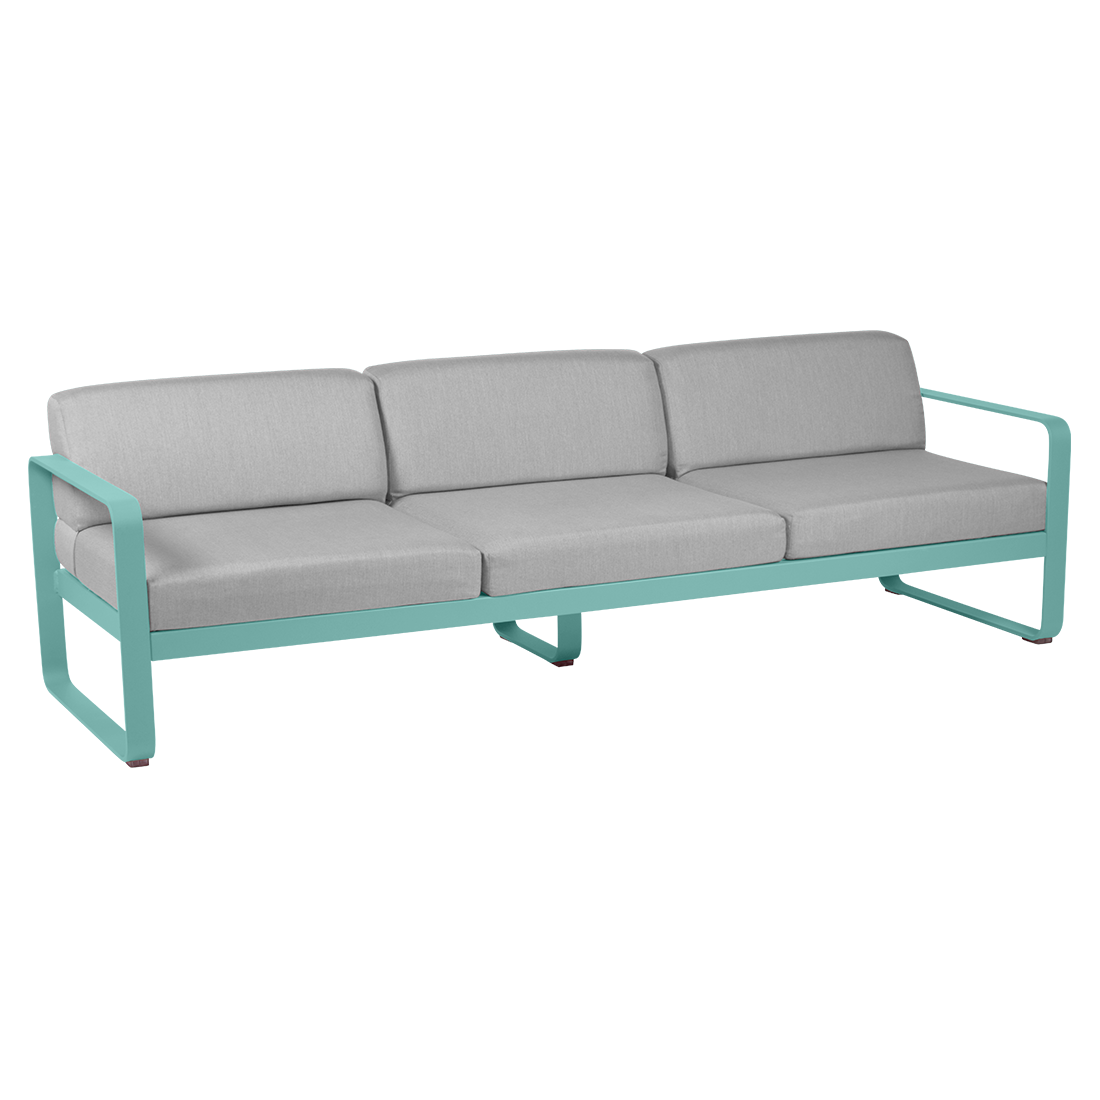 3х местный диван - BELLEVIE - Яркие цвета (серые подушки)»